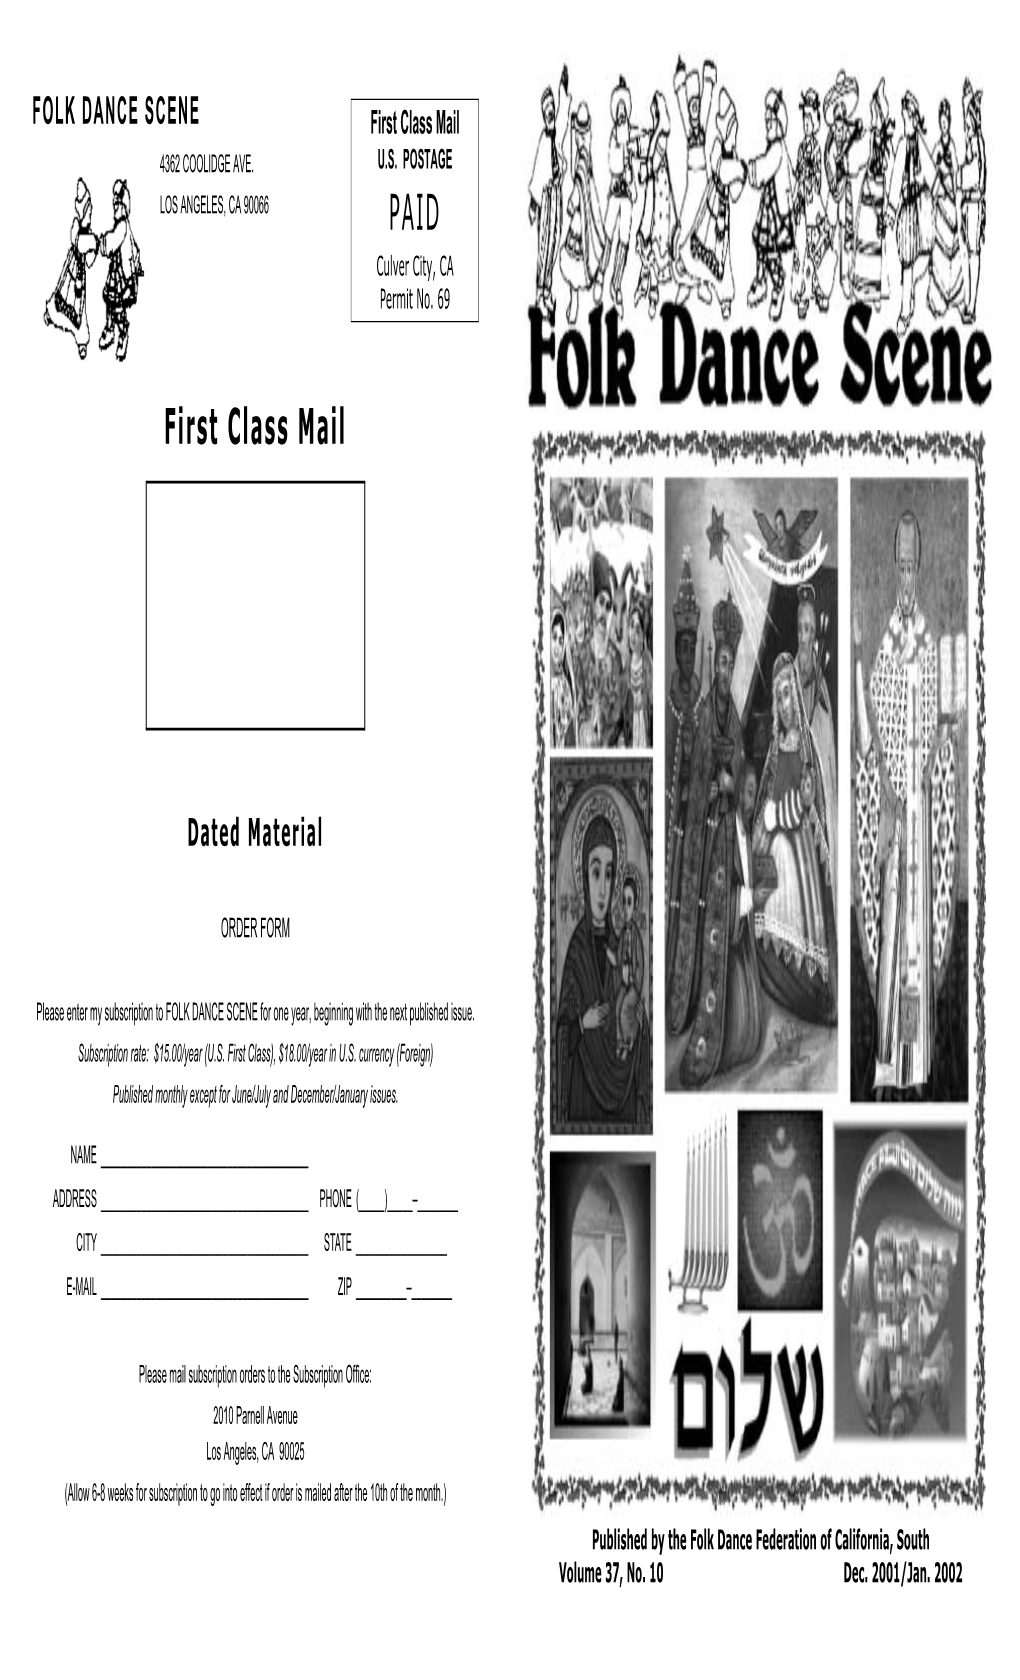 FOLK DANCE SCENE First Class Mail 4362 COOLIDGE AVE